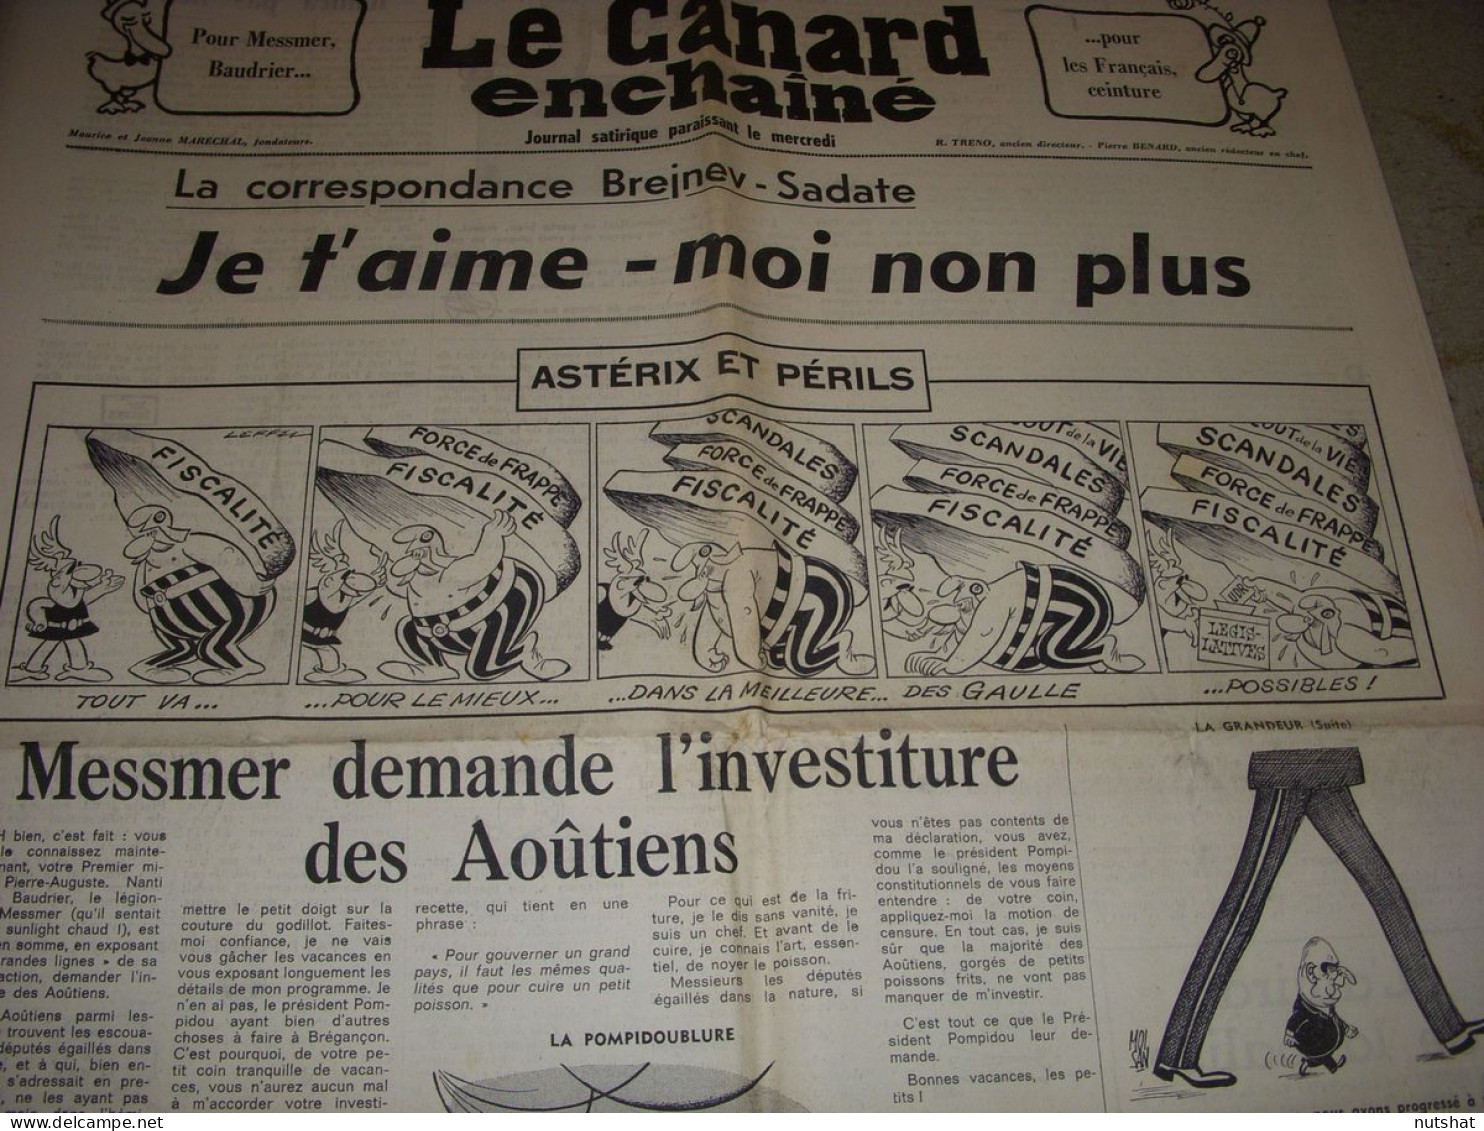 CANARD ENCHAINE 2702 09.08.1972 DW LAURENCE Robert ALTMANN ASTERIX Et PERILS - Politica